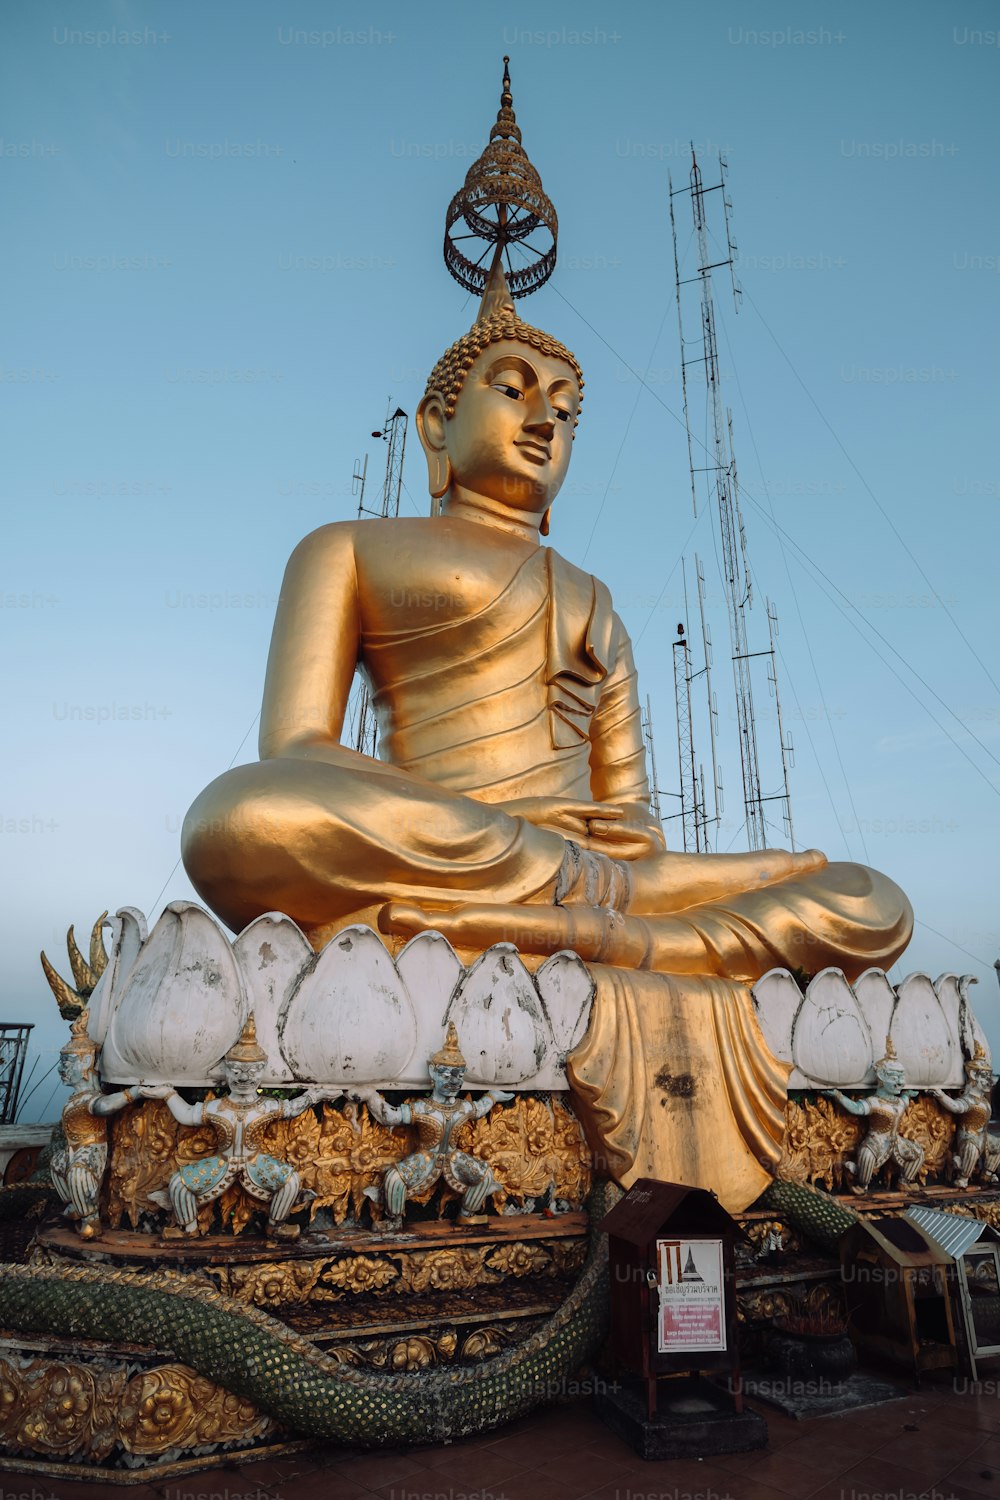 Una grande statua dorata del Buddha seduta sopra un tavolo